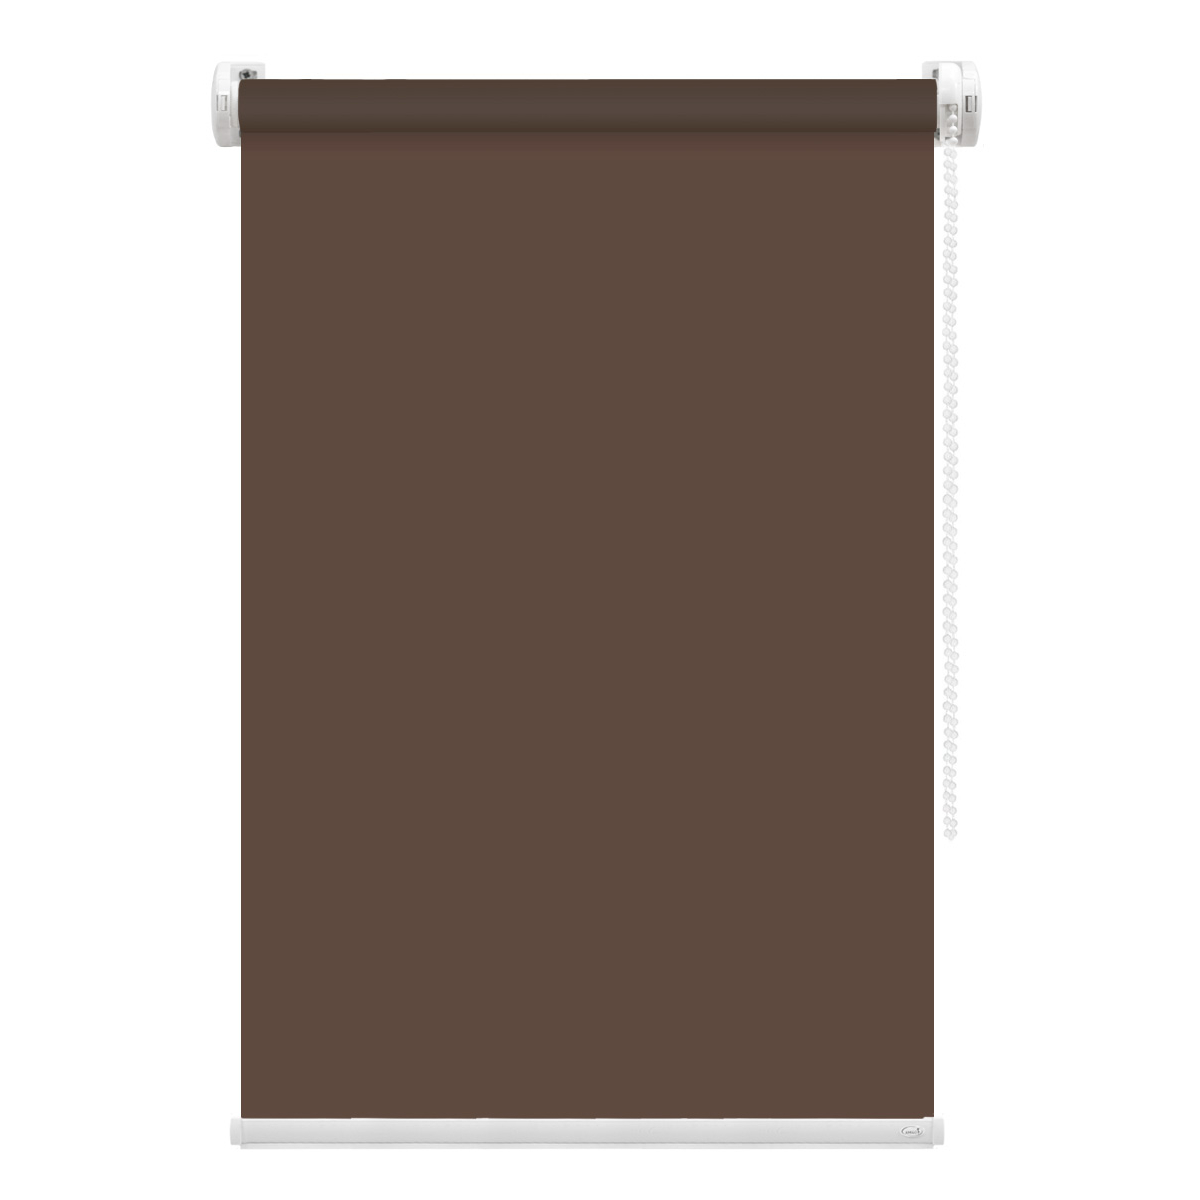 Рулонная штора FixLine Amigo Basic коричневая 65х160 см рулонная штора fixline amigo basic коричневая 50х160 см